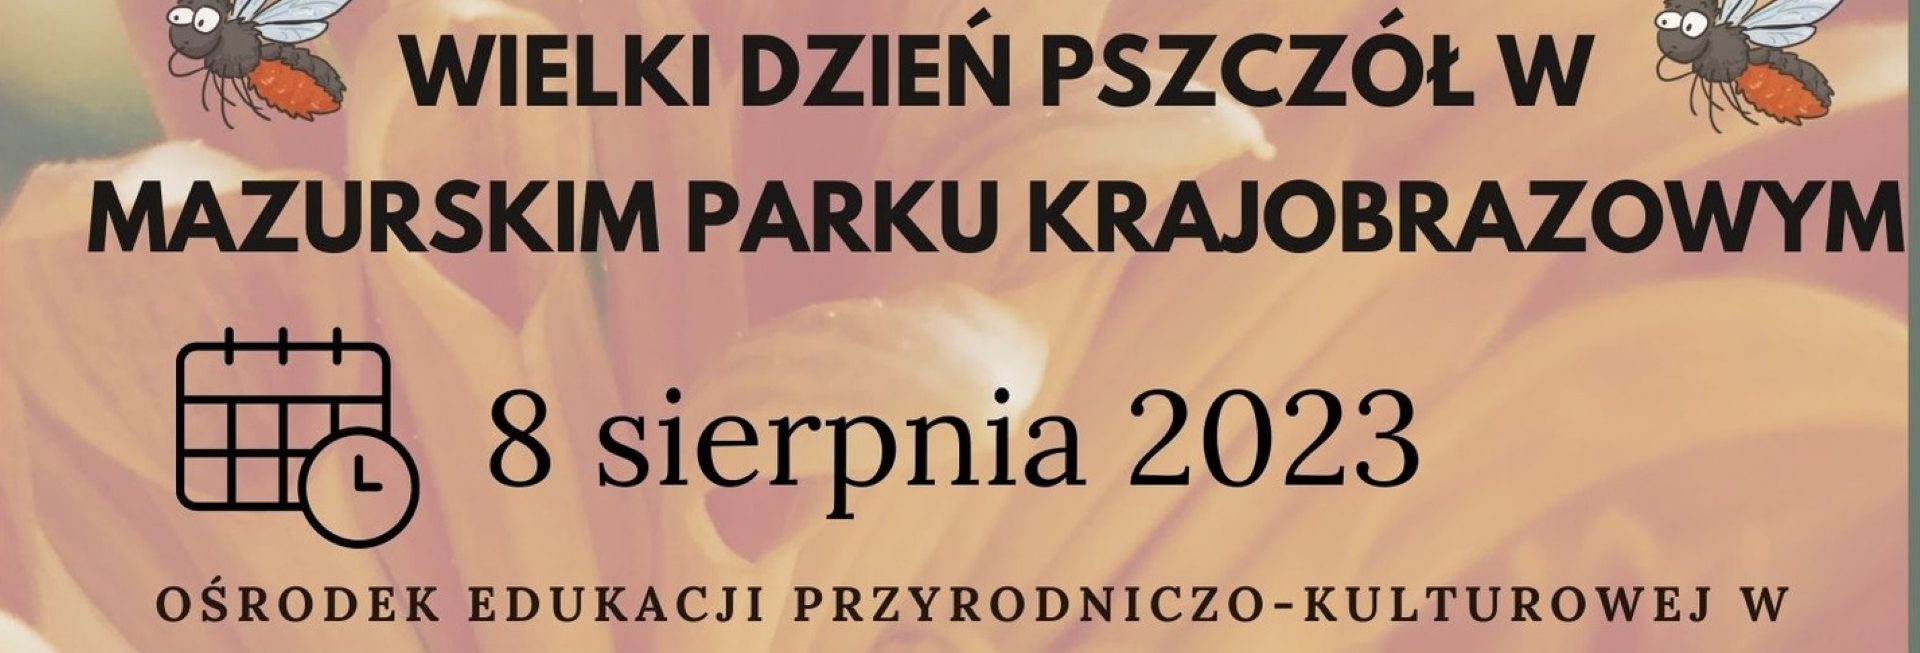 Plakat zapraszający we wtorek 8 sierpnia 2023 r. do Krutyni na Obchody Wielkiego DNIA PSZCZÓŁ Mazurski Park Krajobrazowy KRUTYNIA 2023.